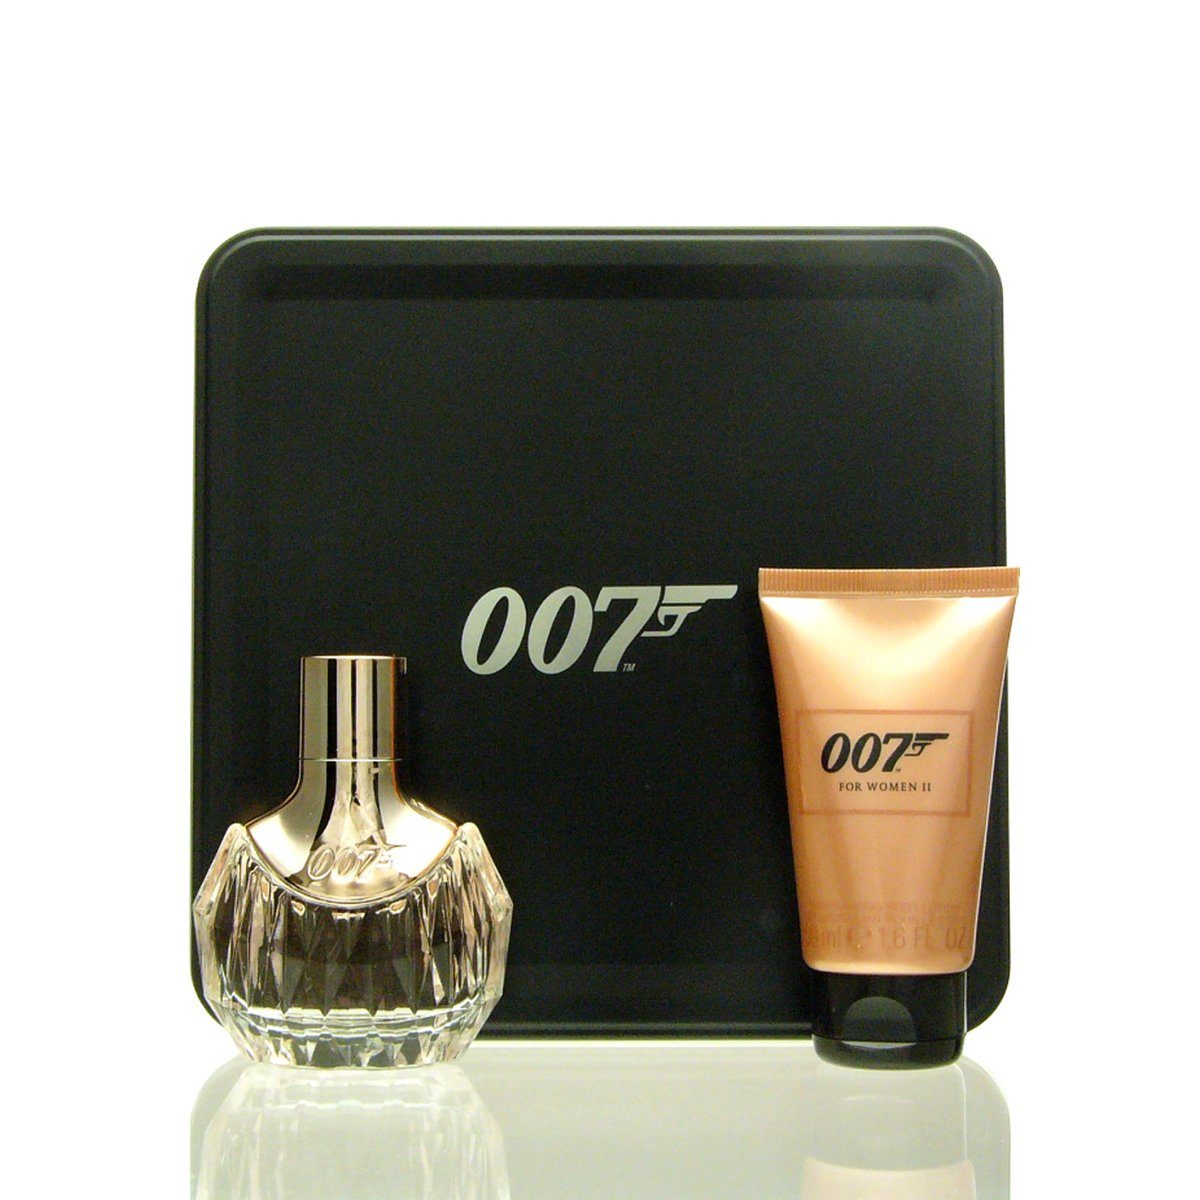 James Bond Körperpflegemittel James Bond 007 for Women II Set - EDP 30 ml + BL 50 ml